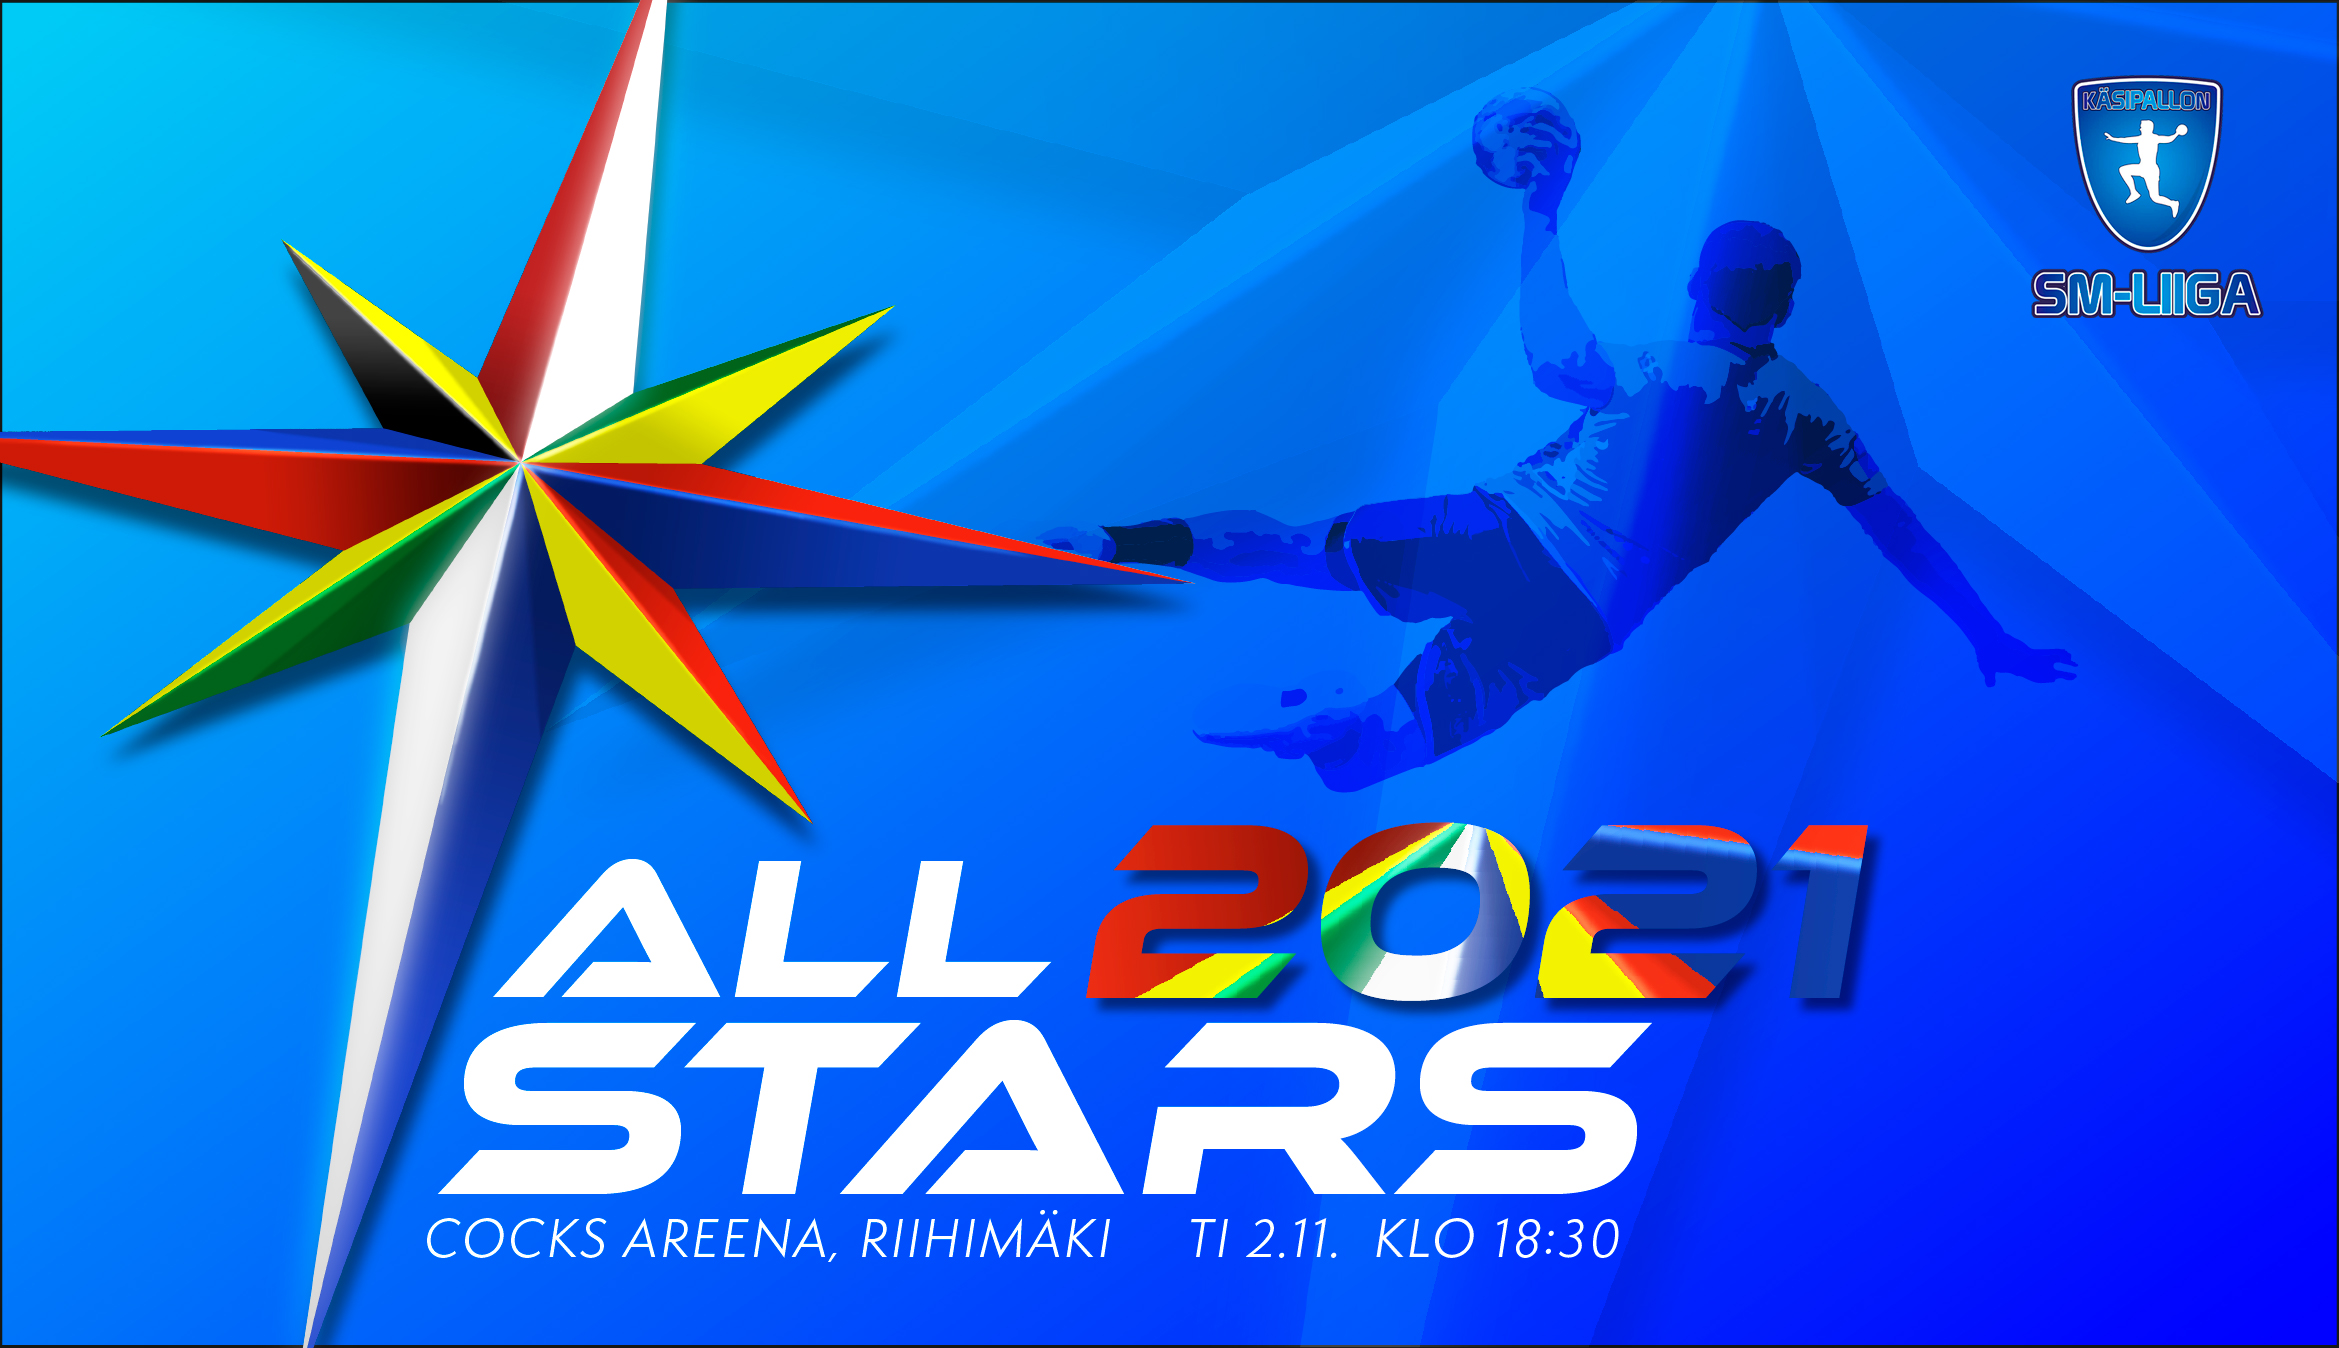 SM-liigan All Stars -joukkue 2021 valittu – Käsipallon SM-liiga